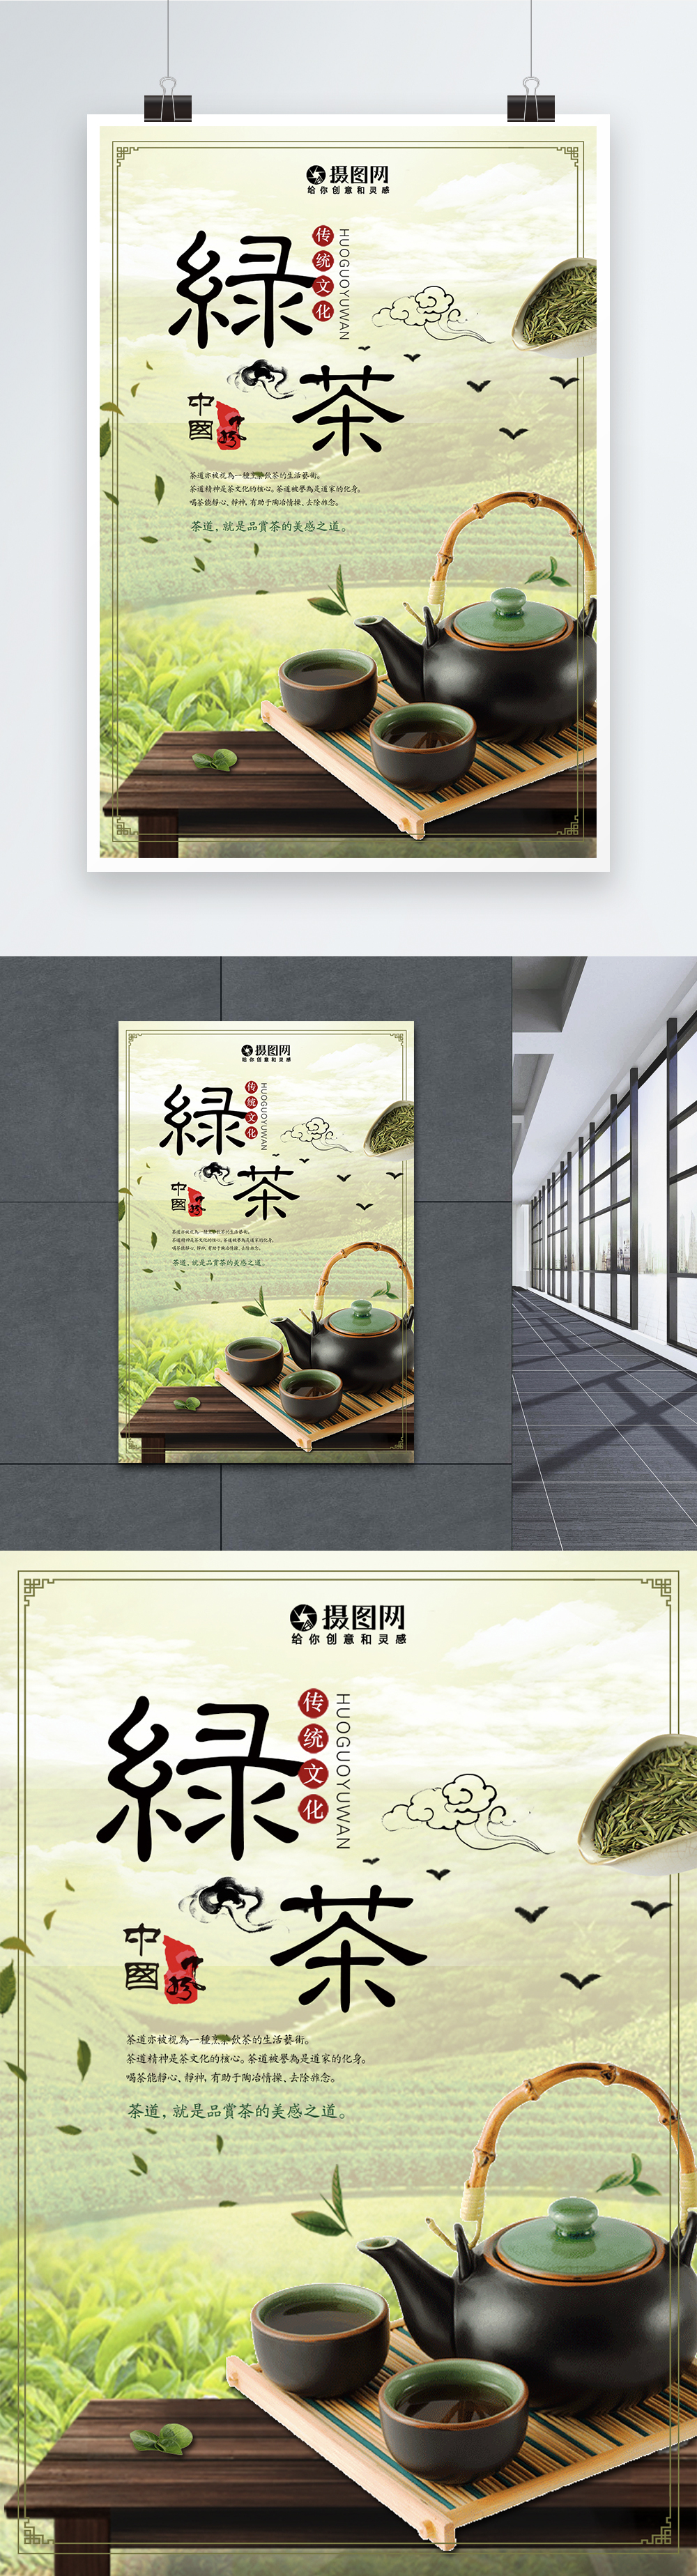 cultural green tea image